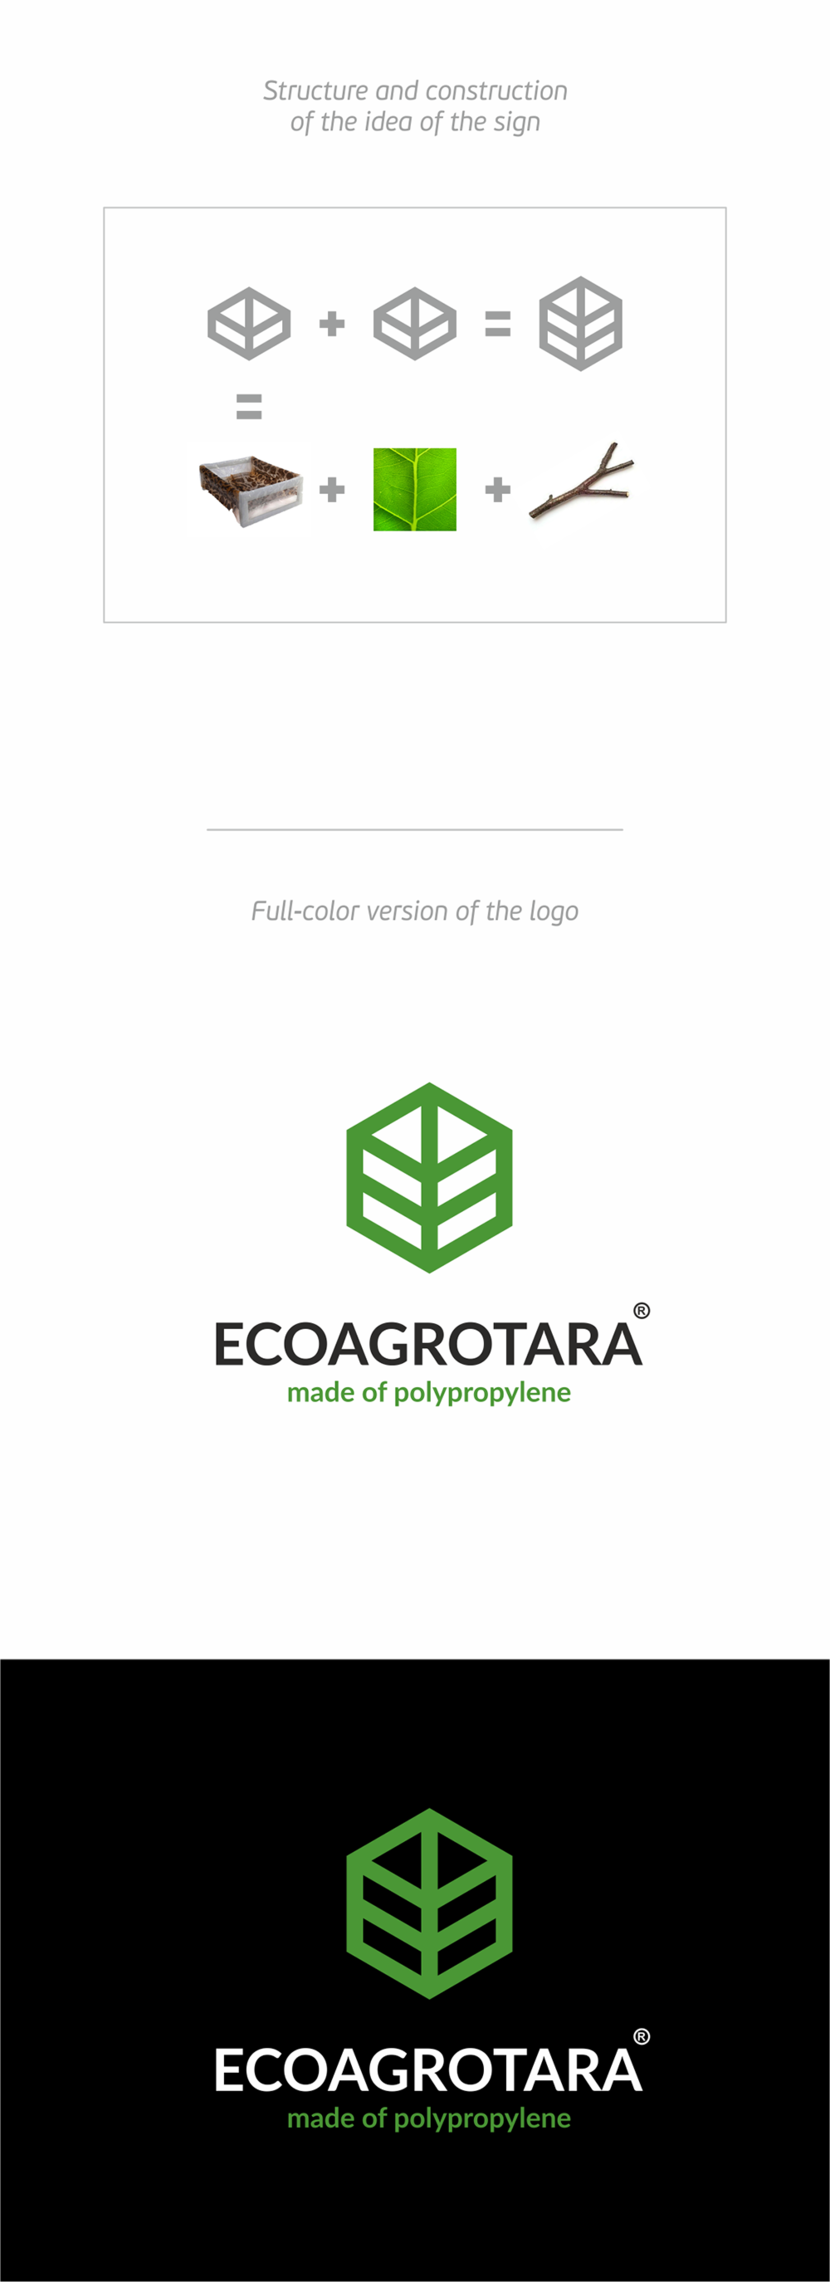 + - Конкурс на создание логотипа для компании ЭКОАГРОТАРА